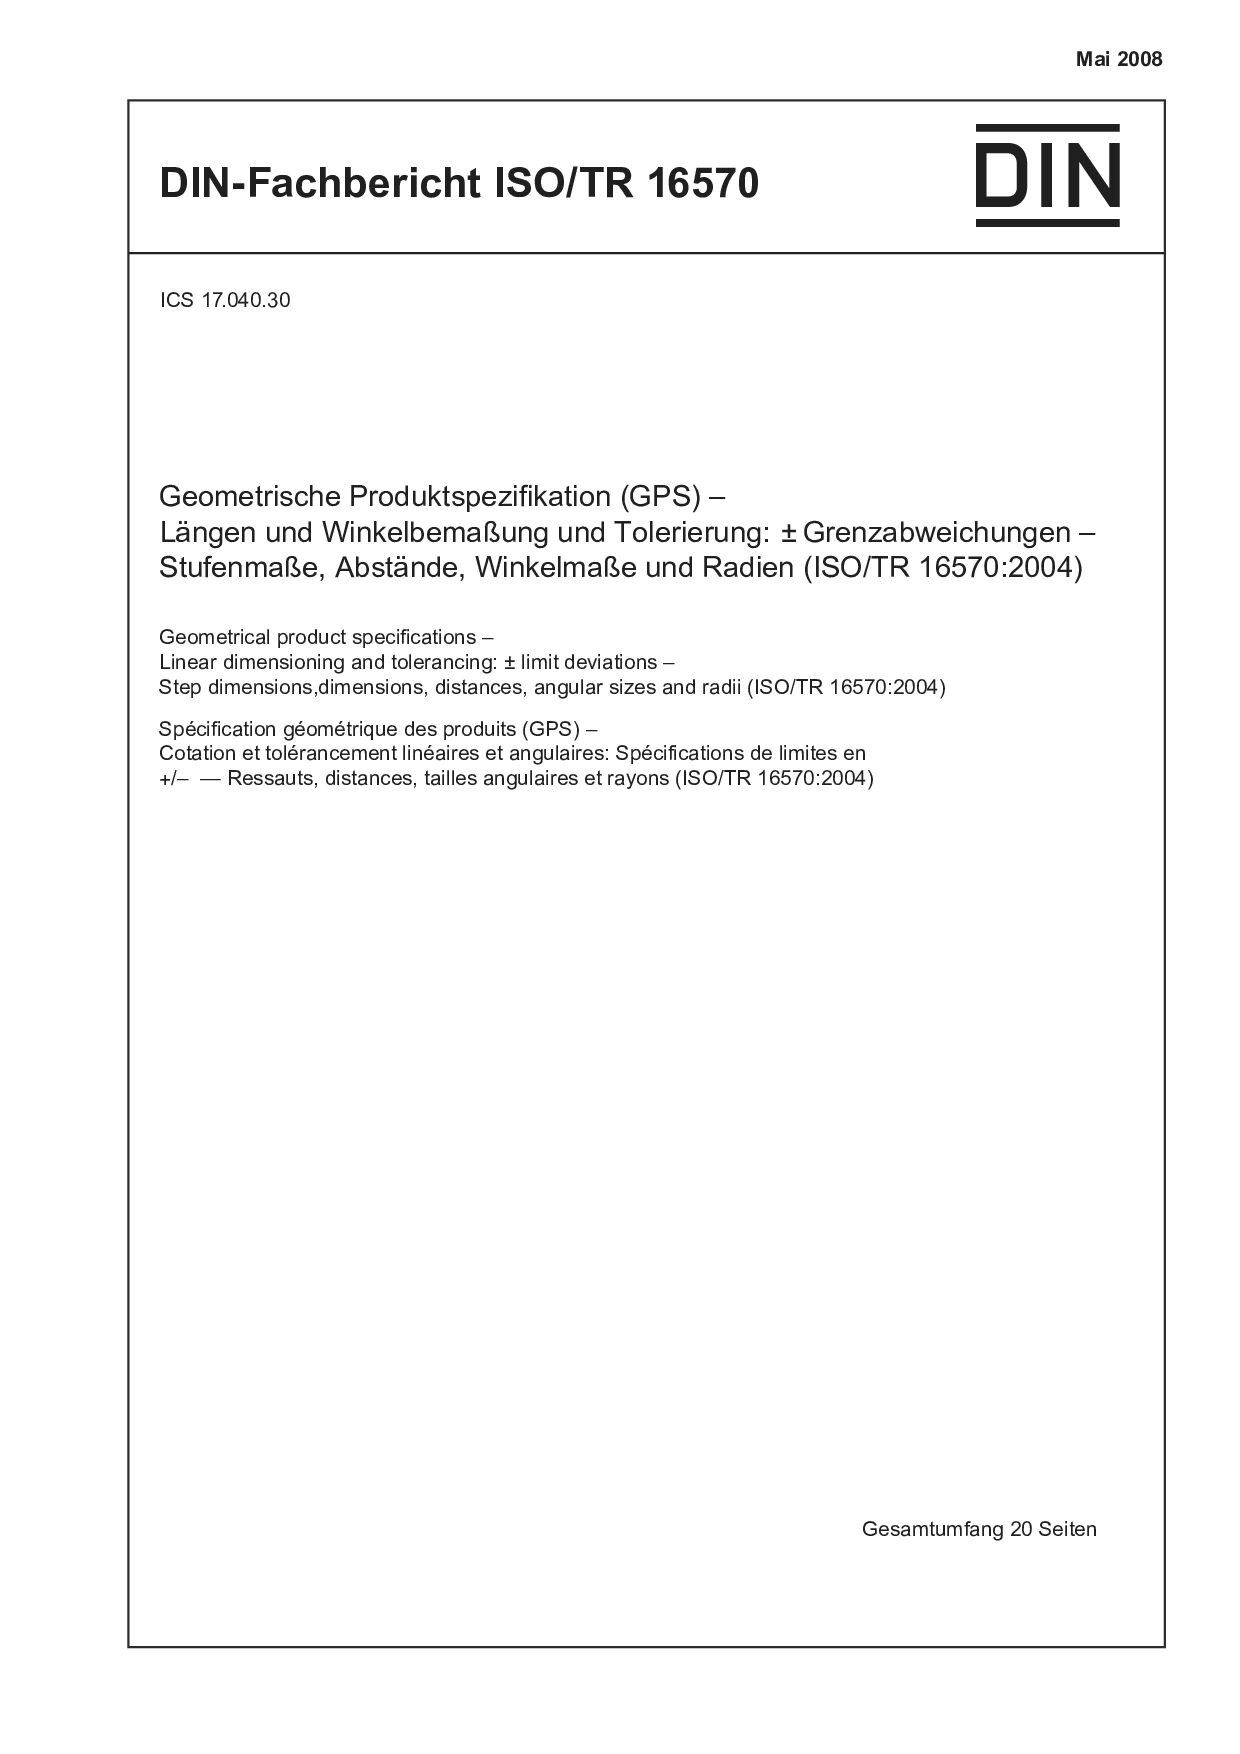 DIN-Fachbericht ISO/TR 16570:2008封面图